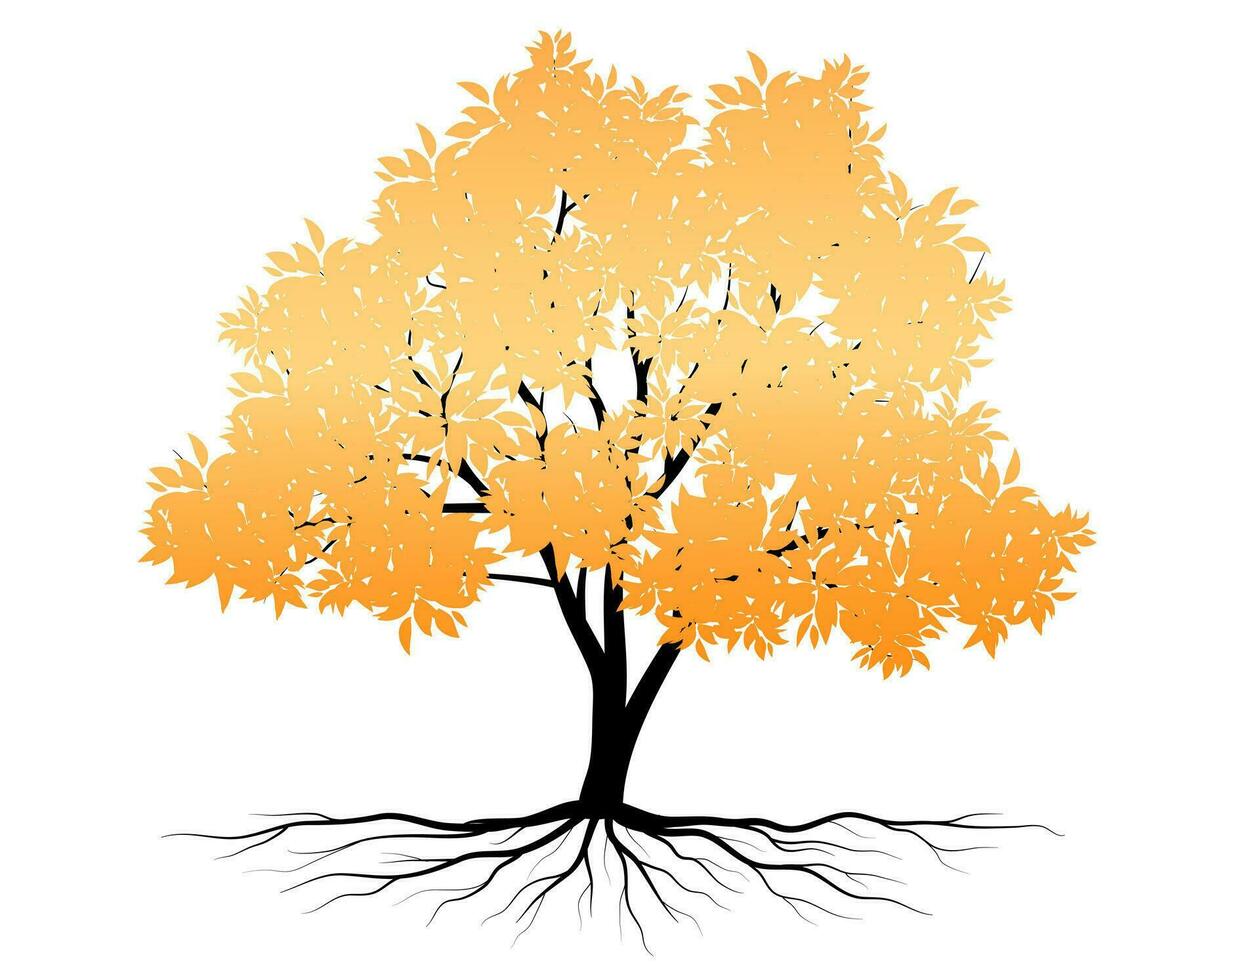 Herbst Baum Symbol style.can Sein benutzt zum Ihre Arbeit.Willkommen Herbst Jahreszeit Konzept. vektor